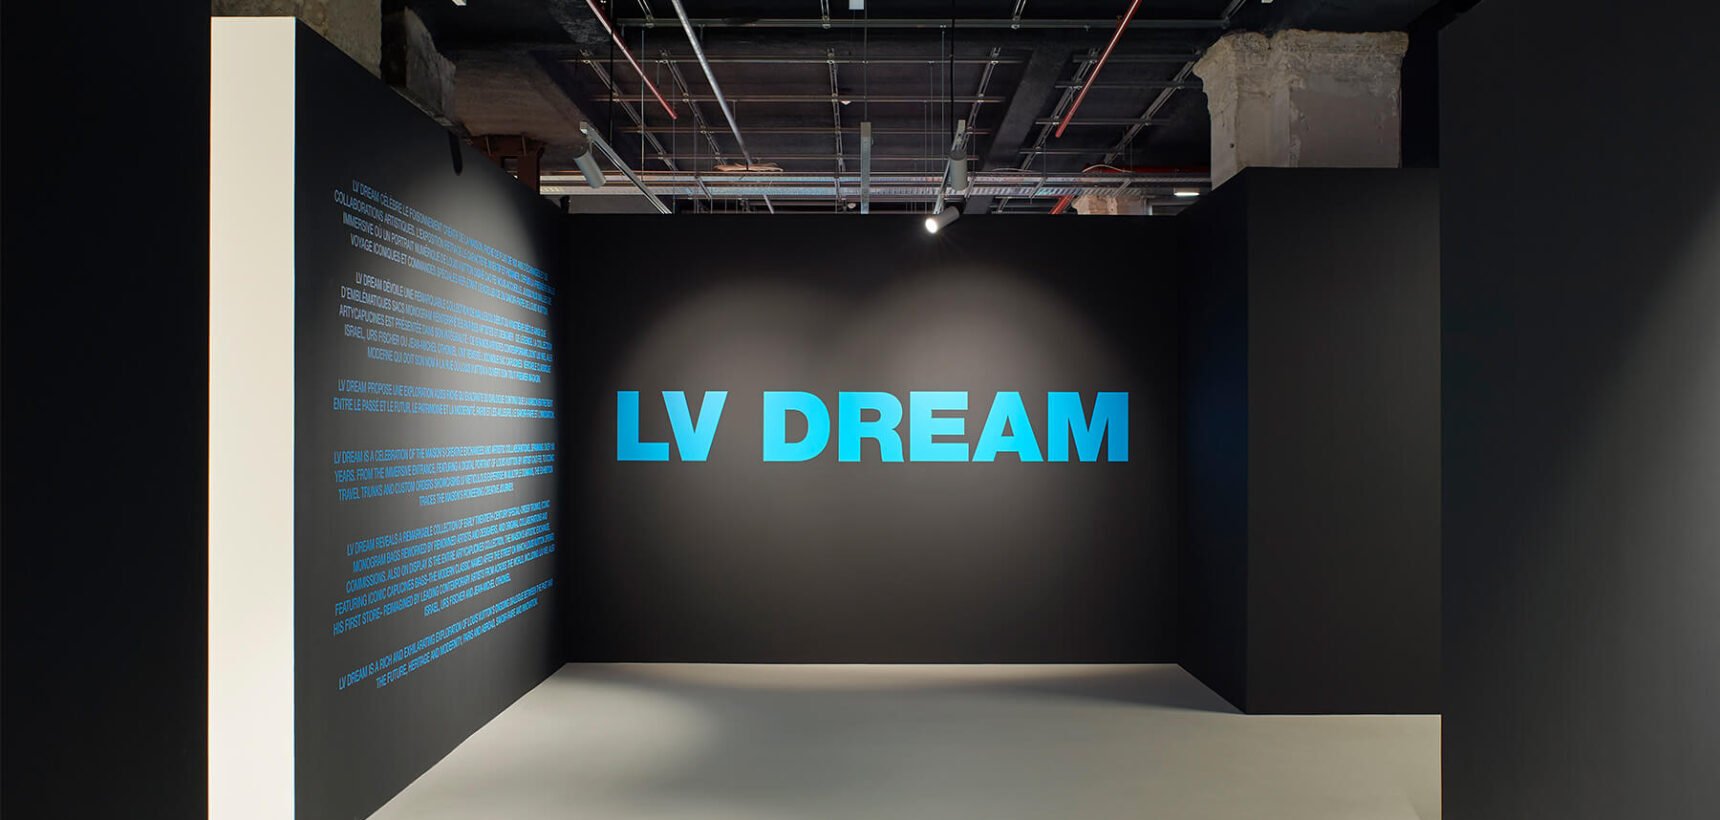 Louis Vuitton presents immersive LV Dream exhibition celebrating